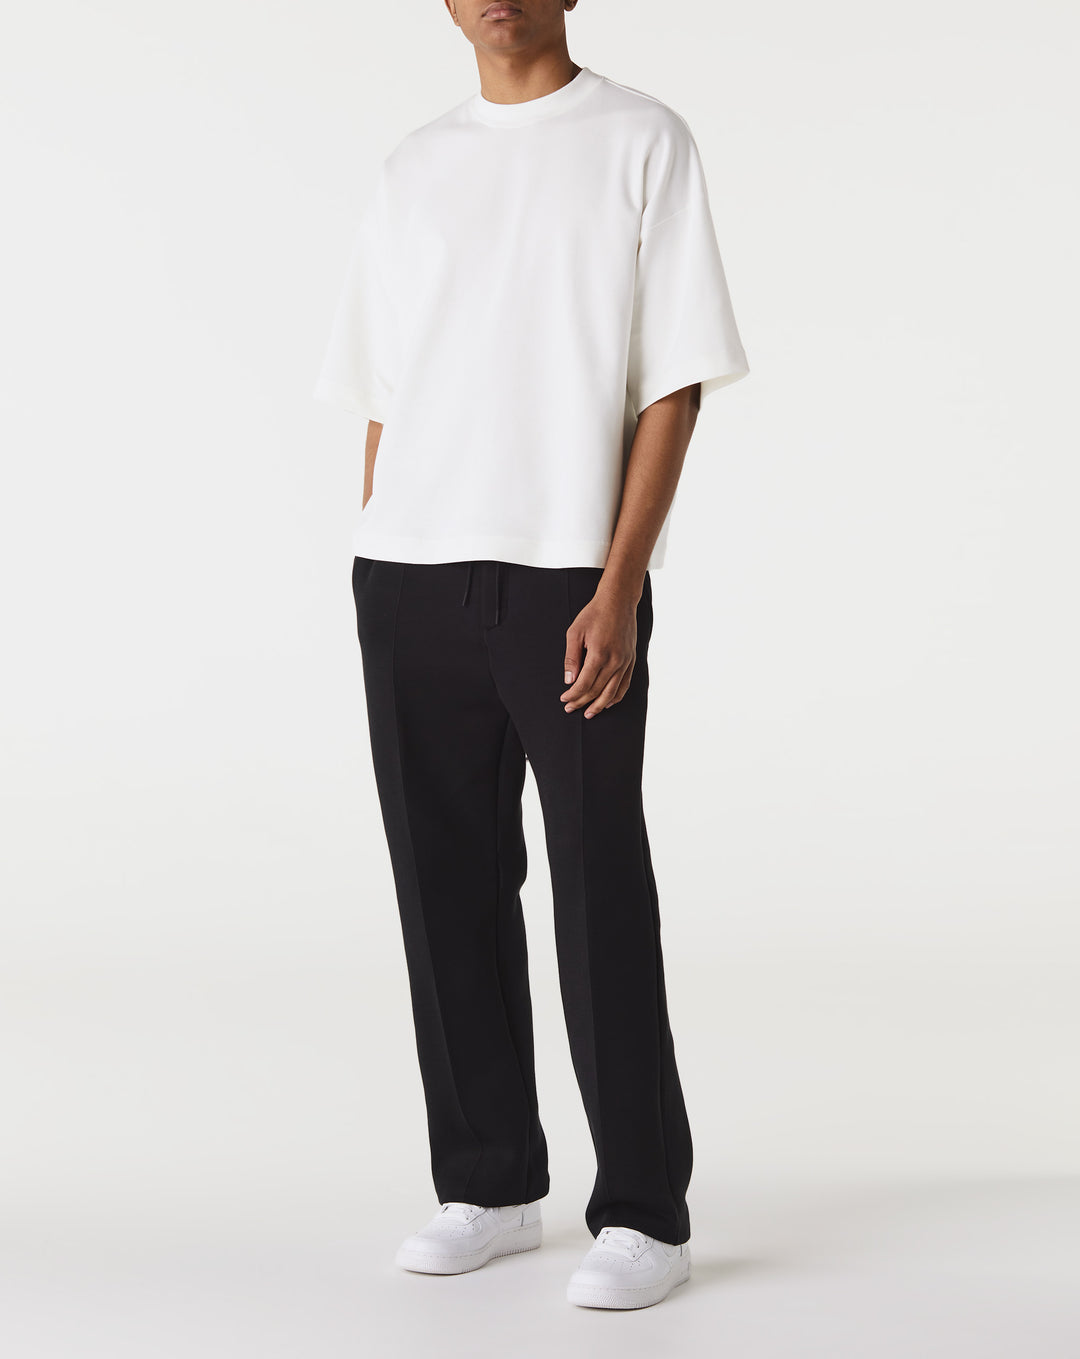 Nike Tech Fleece Reimagined Oversized Short-Sleeve Sweatshirt  - XHIBITION